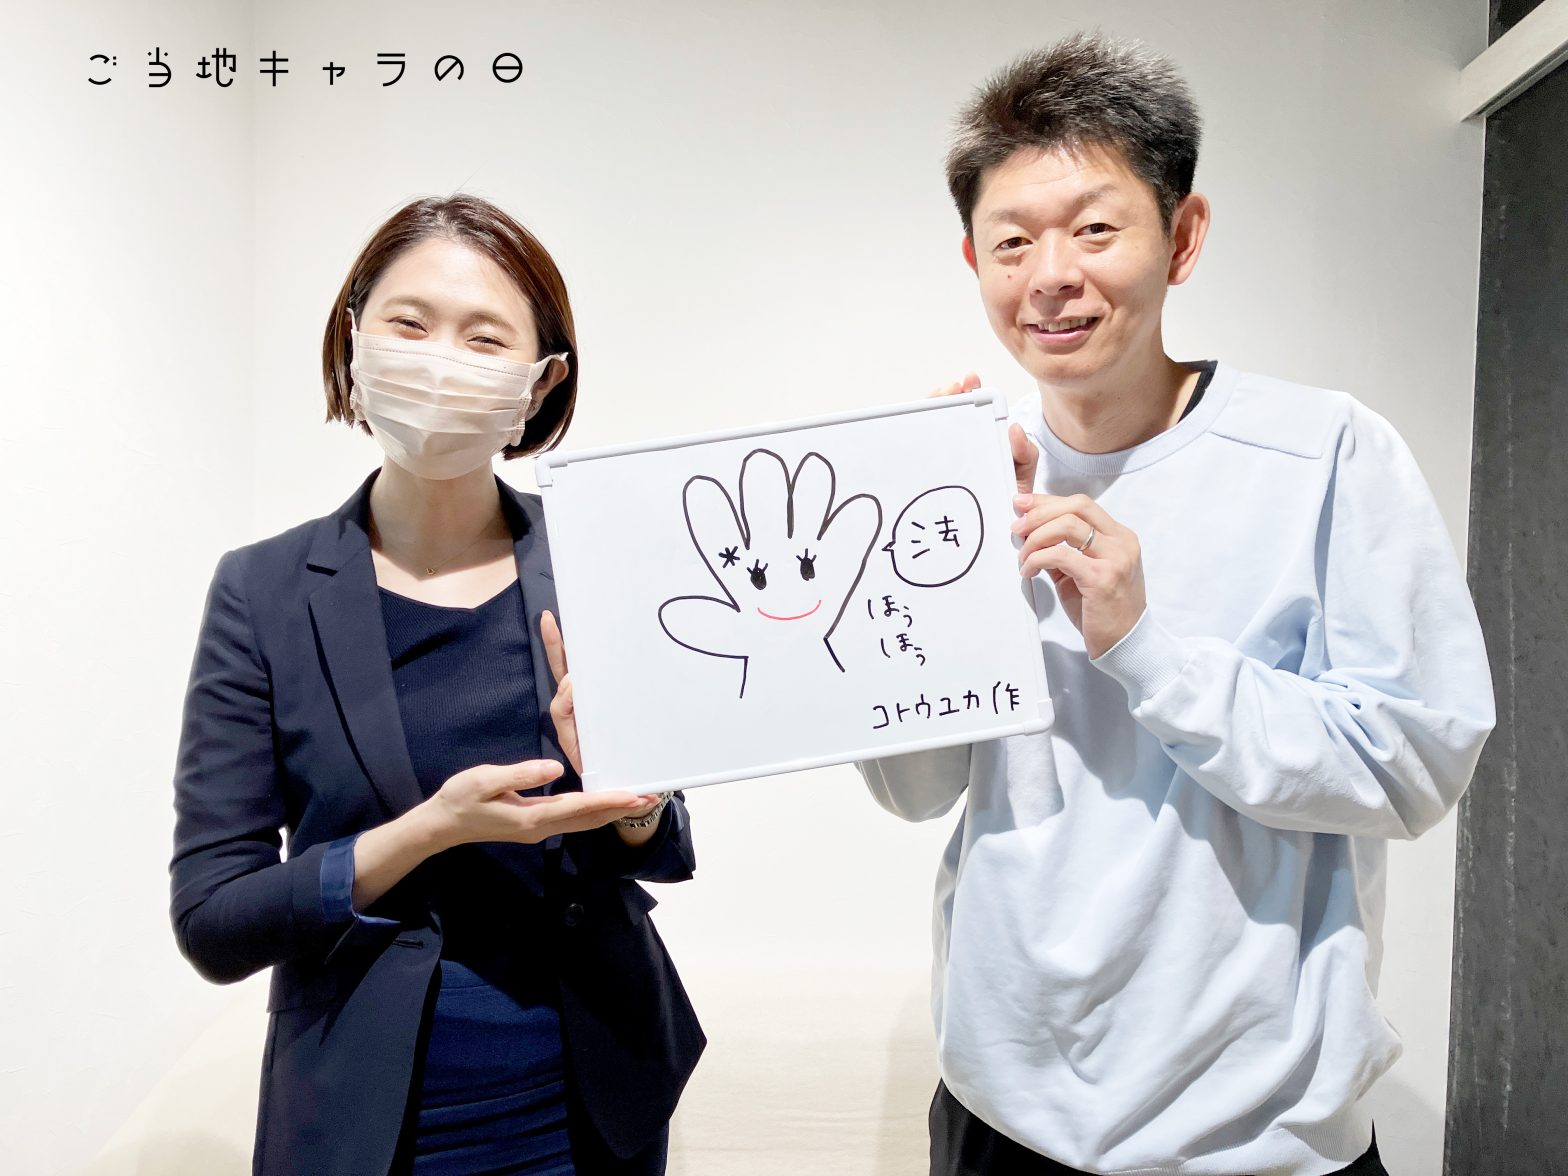 古藤先生が描いた番組キャラクター(非公式)のボードを持る島田秀平さんと古藤由佳弁護士